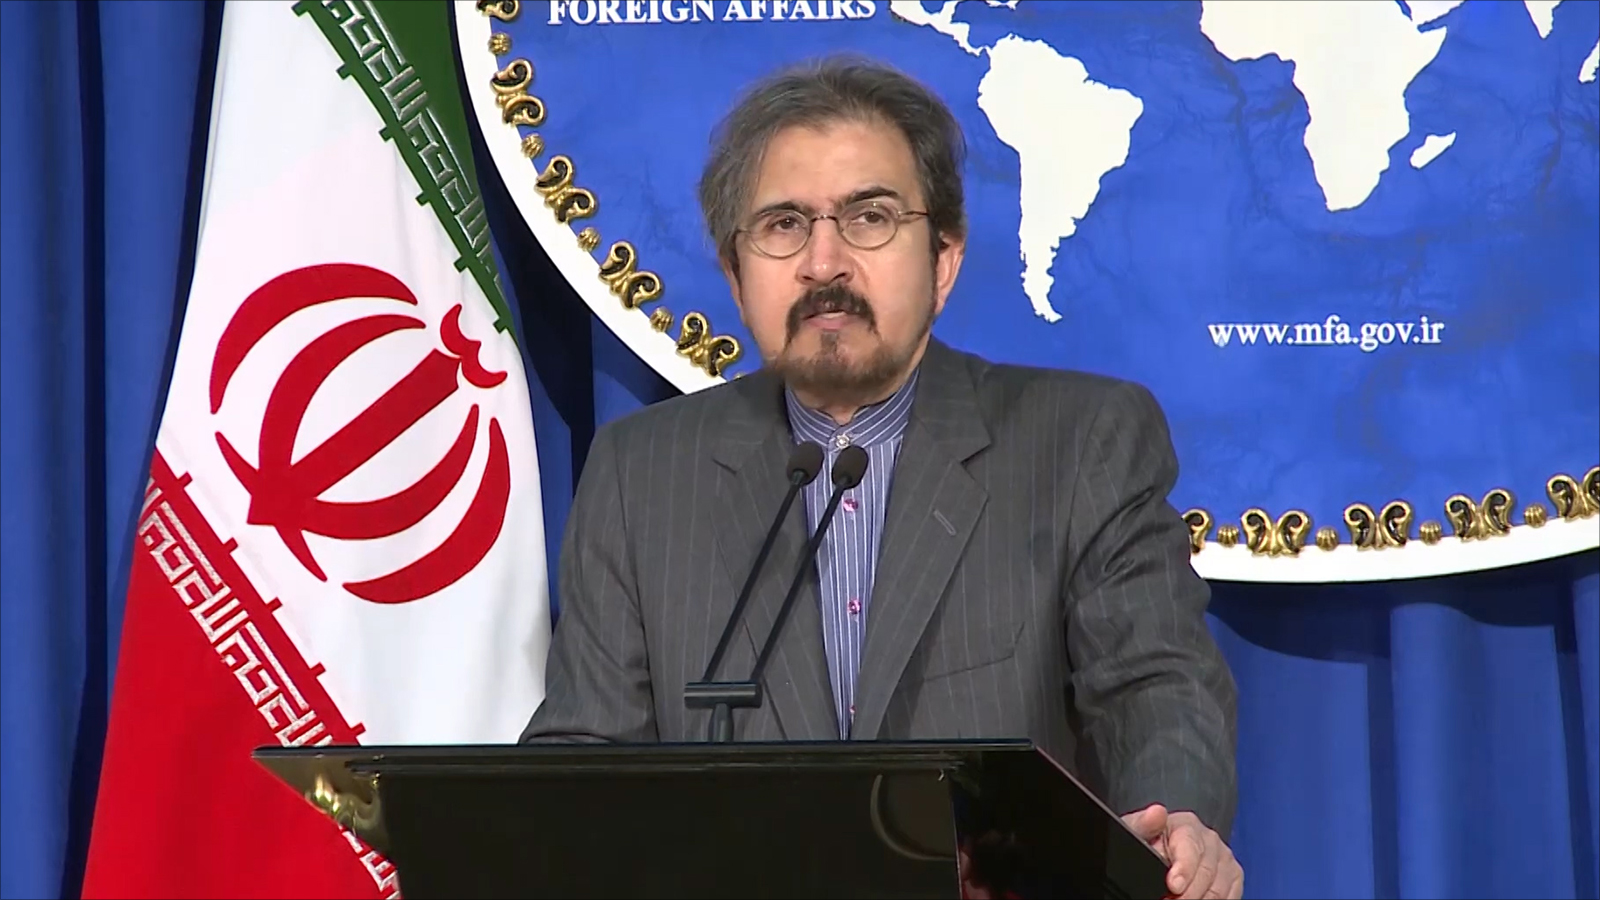 صرّح بهرام قاسمي -المتحدث باسم وزارة الخارجية الإيرانية- يوم الاثنين الماضي بأن تصريحات بومبيو تشير إلى 